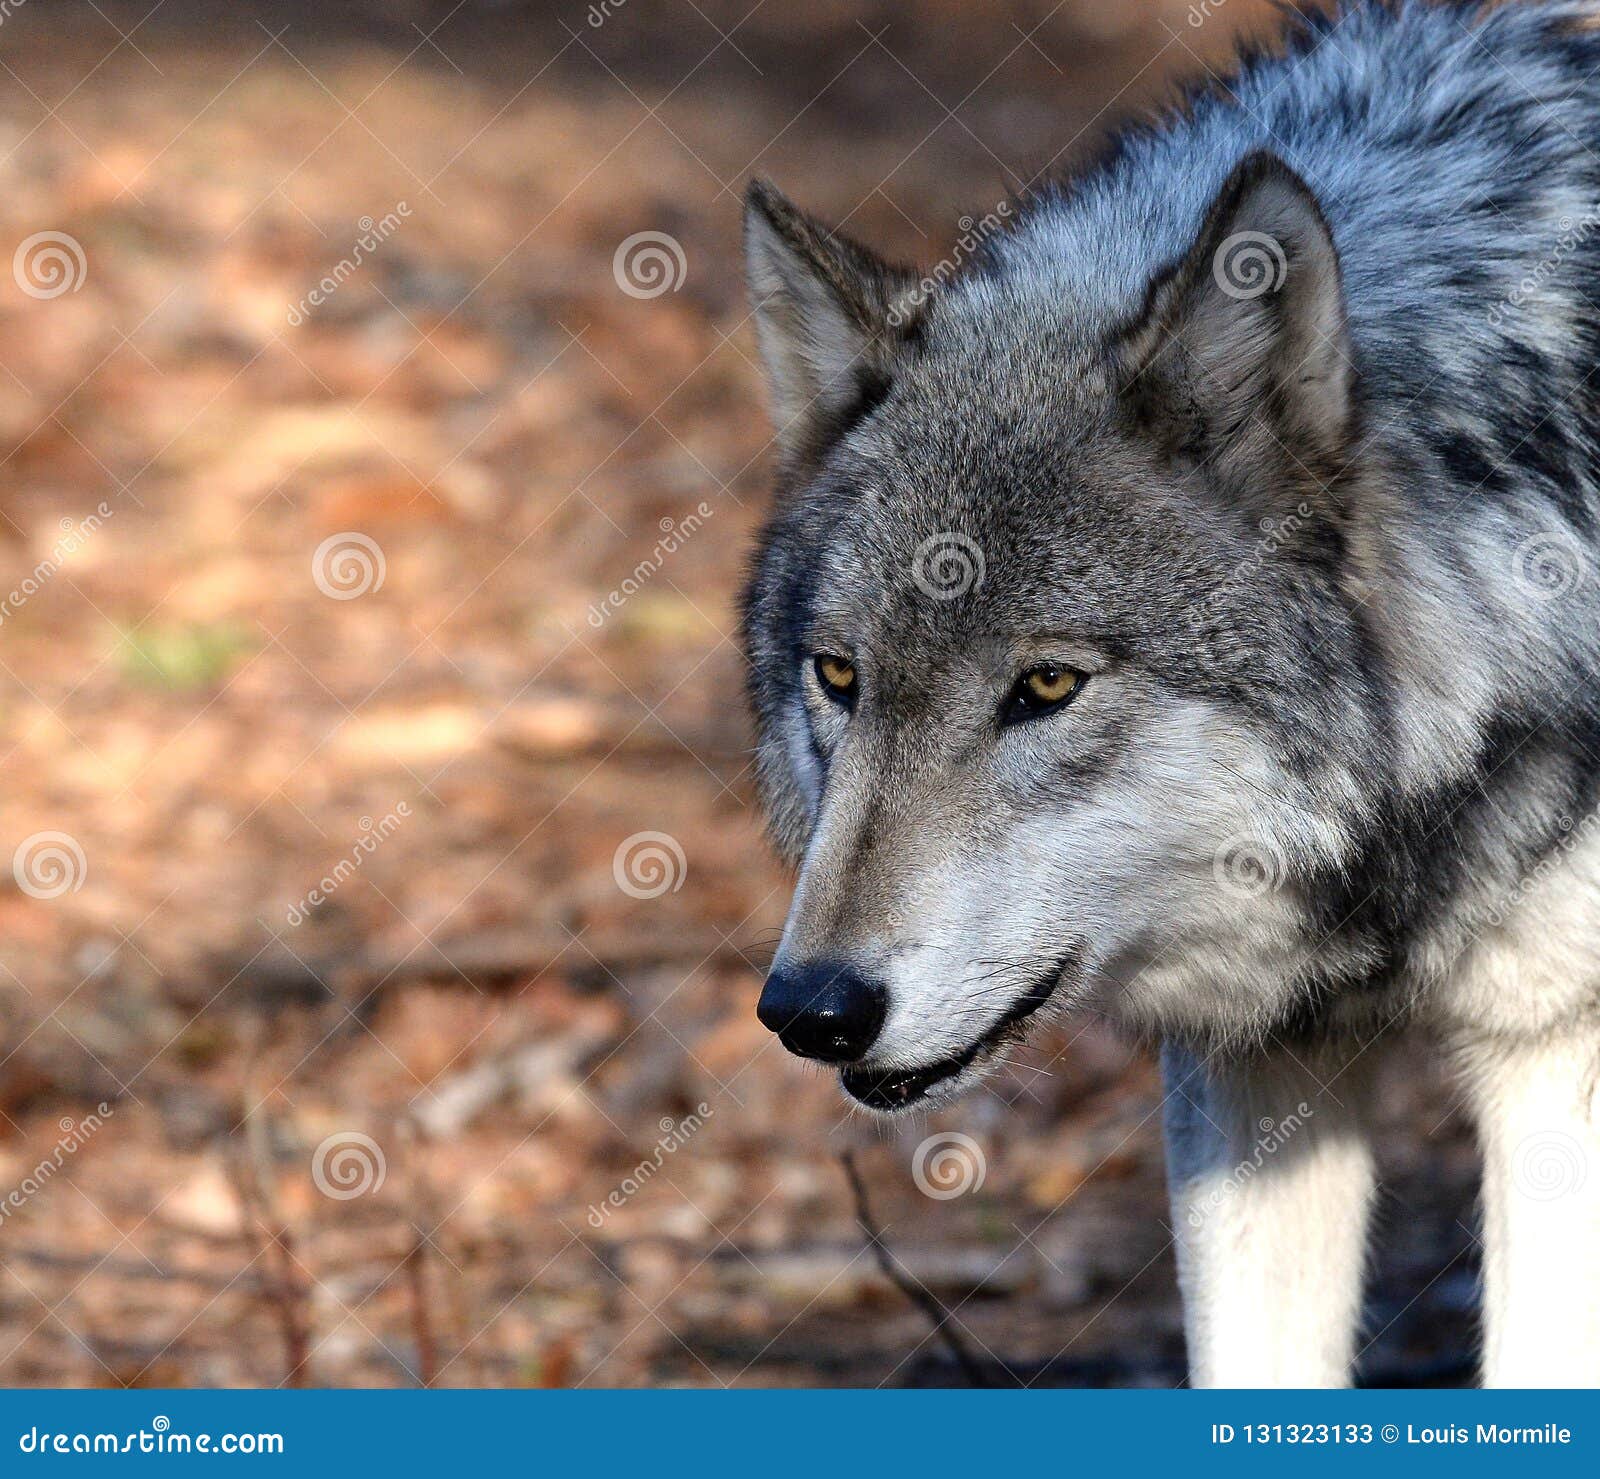 Saarloos猎狼犬美丽的母狗在冬天公园 库存图片. 图片 包括有 没人, 哺乳动物, 纵向, 食肉动物 - 109874997